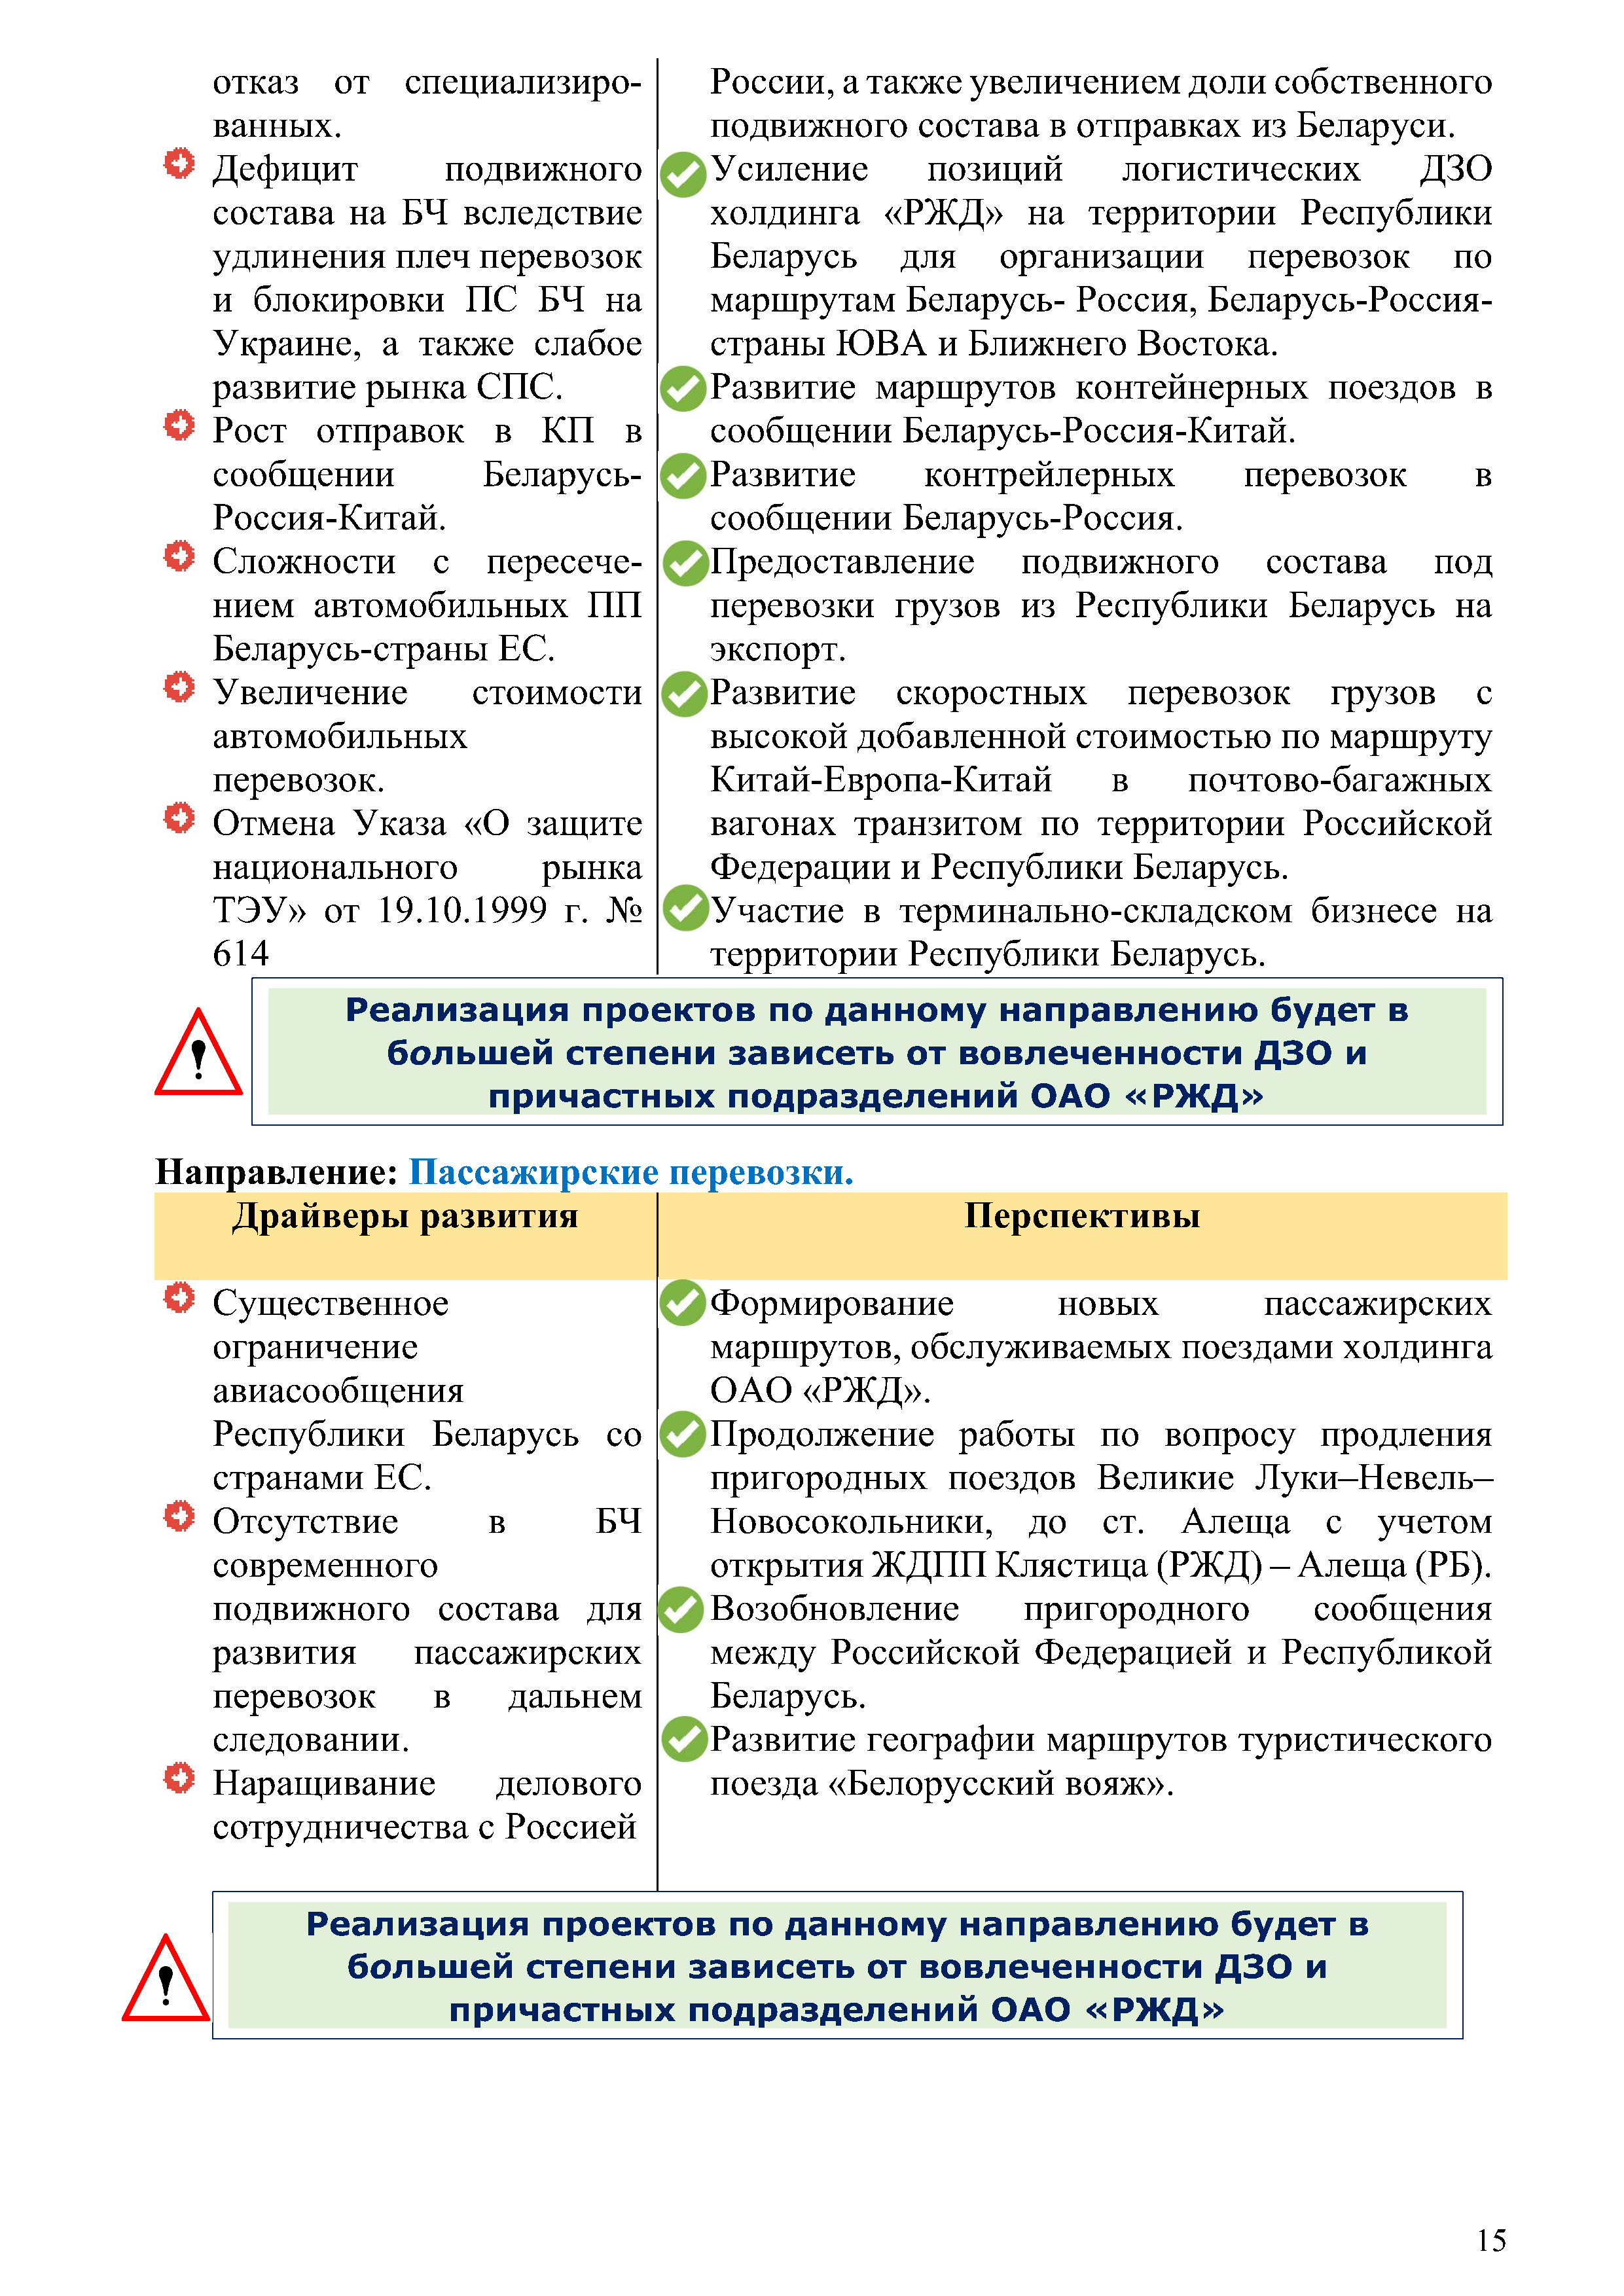 Отчет о работе представительства ОАО «РЖД» в Республике Беларусь за 2022 год (Страница 14)